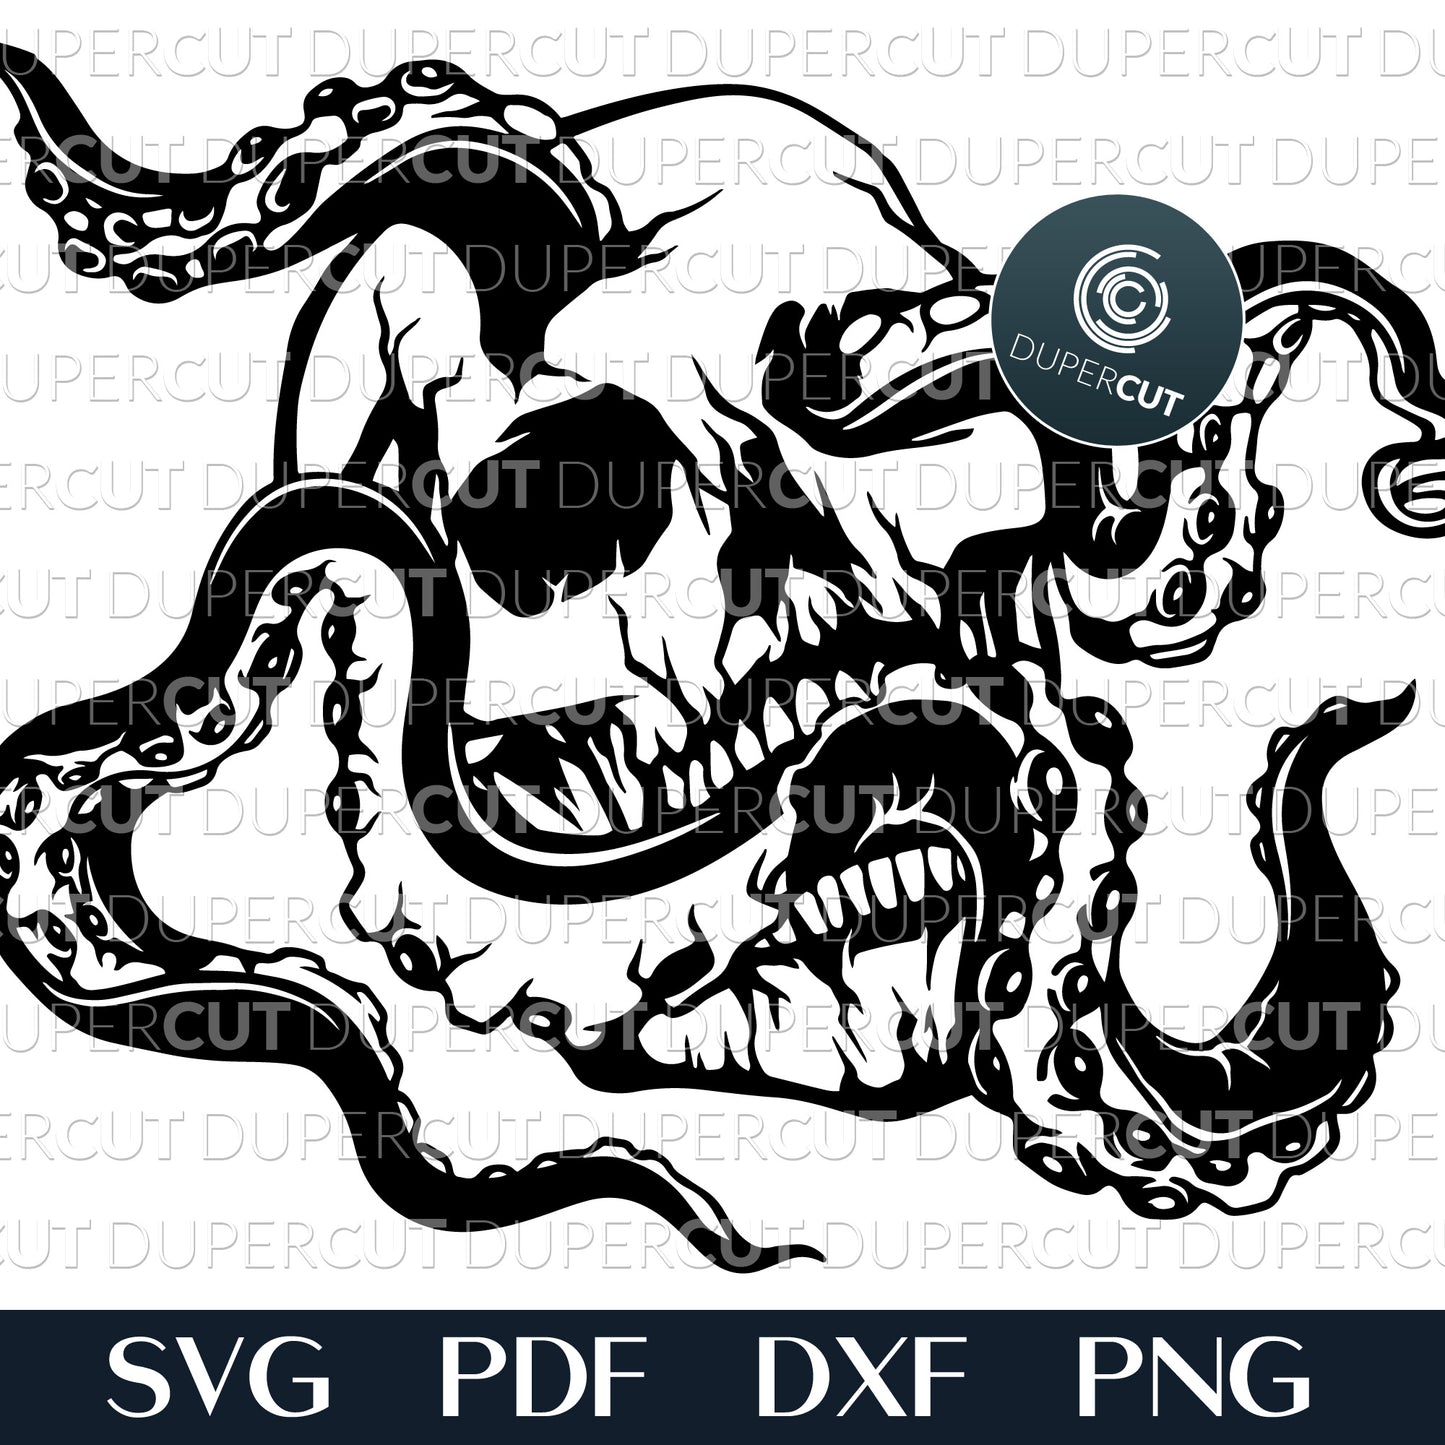 OCTOPUS SKULL - SVG / PDF / DXF / PNG – DuperCut